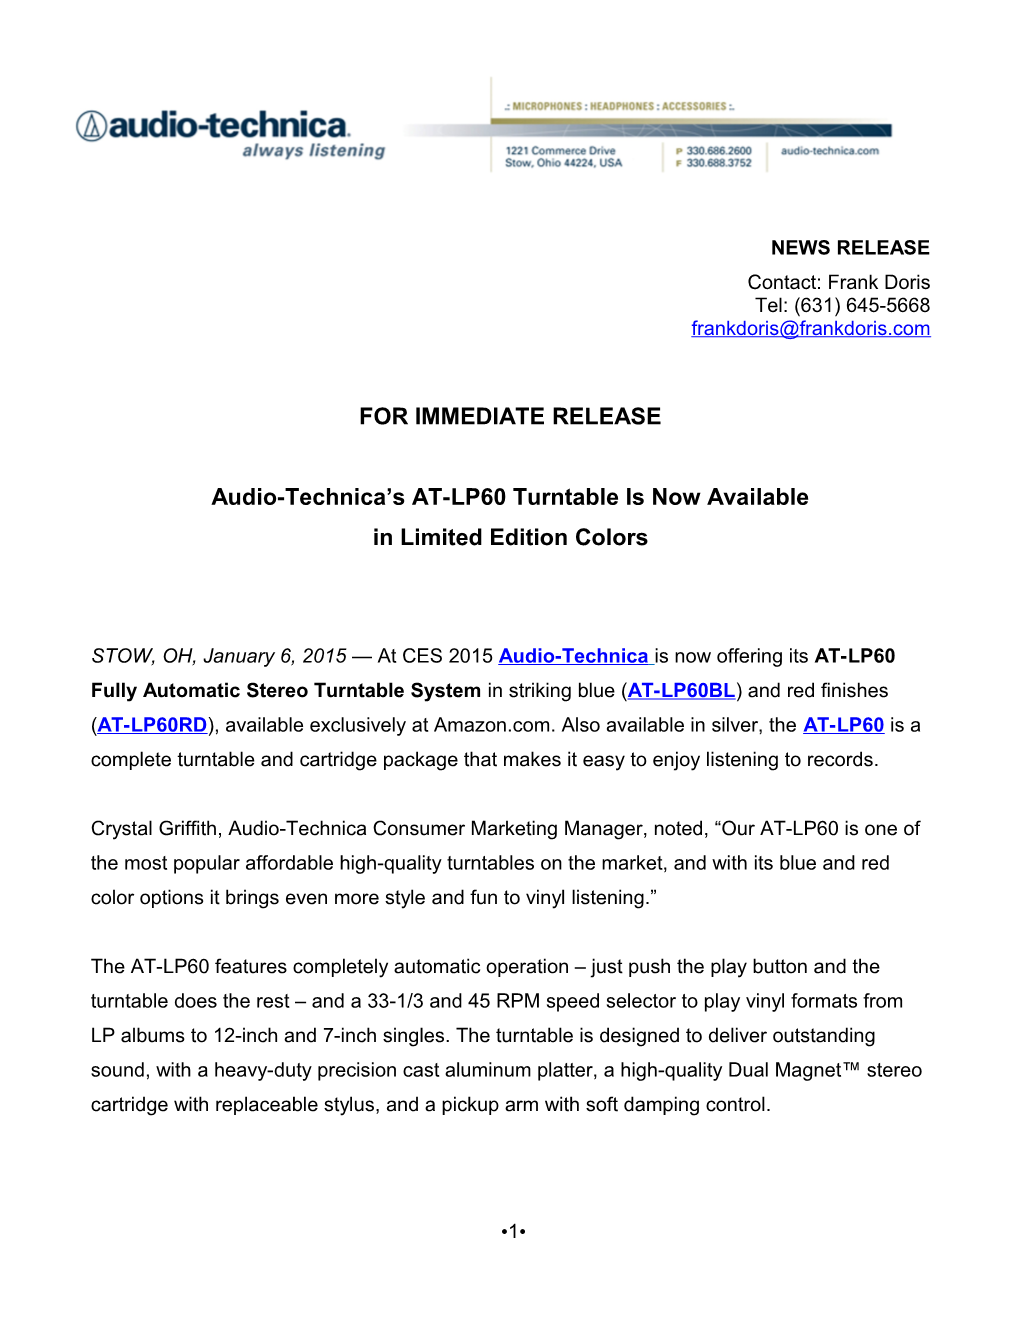 Audio-Technica AT-LP60 Press Release s1